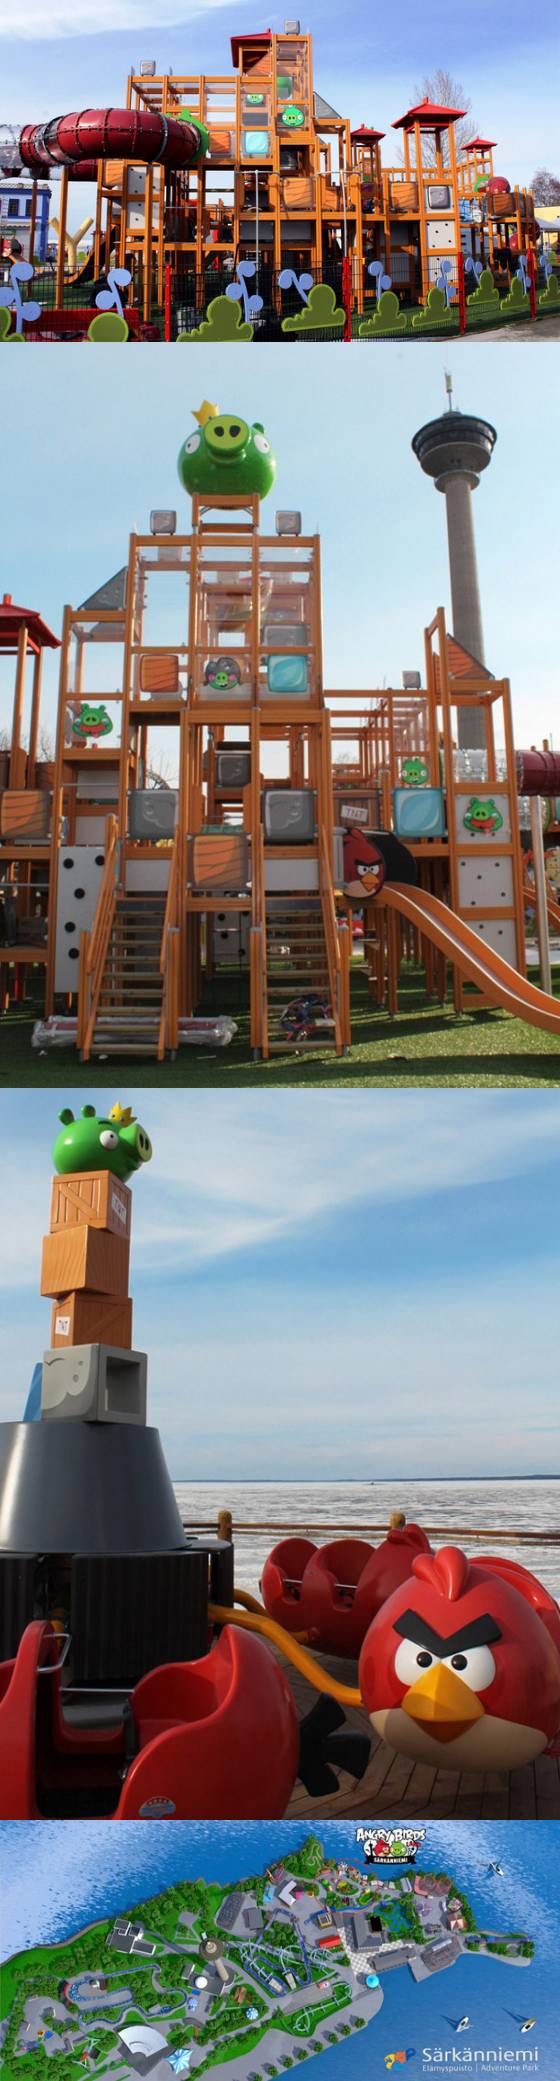 Angry Birds speeltuin